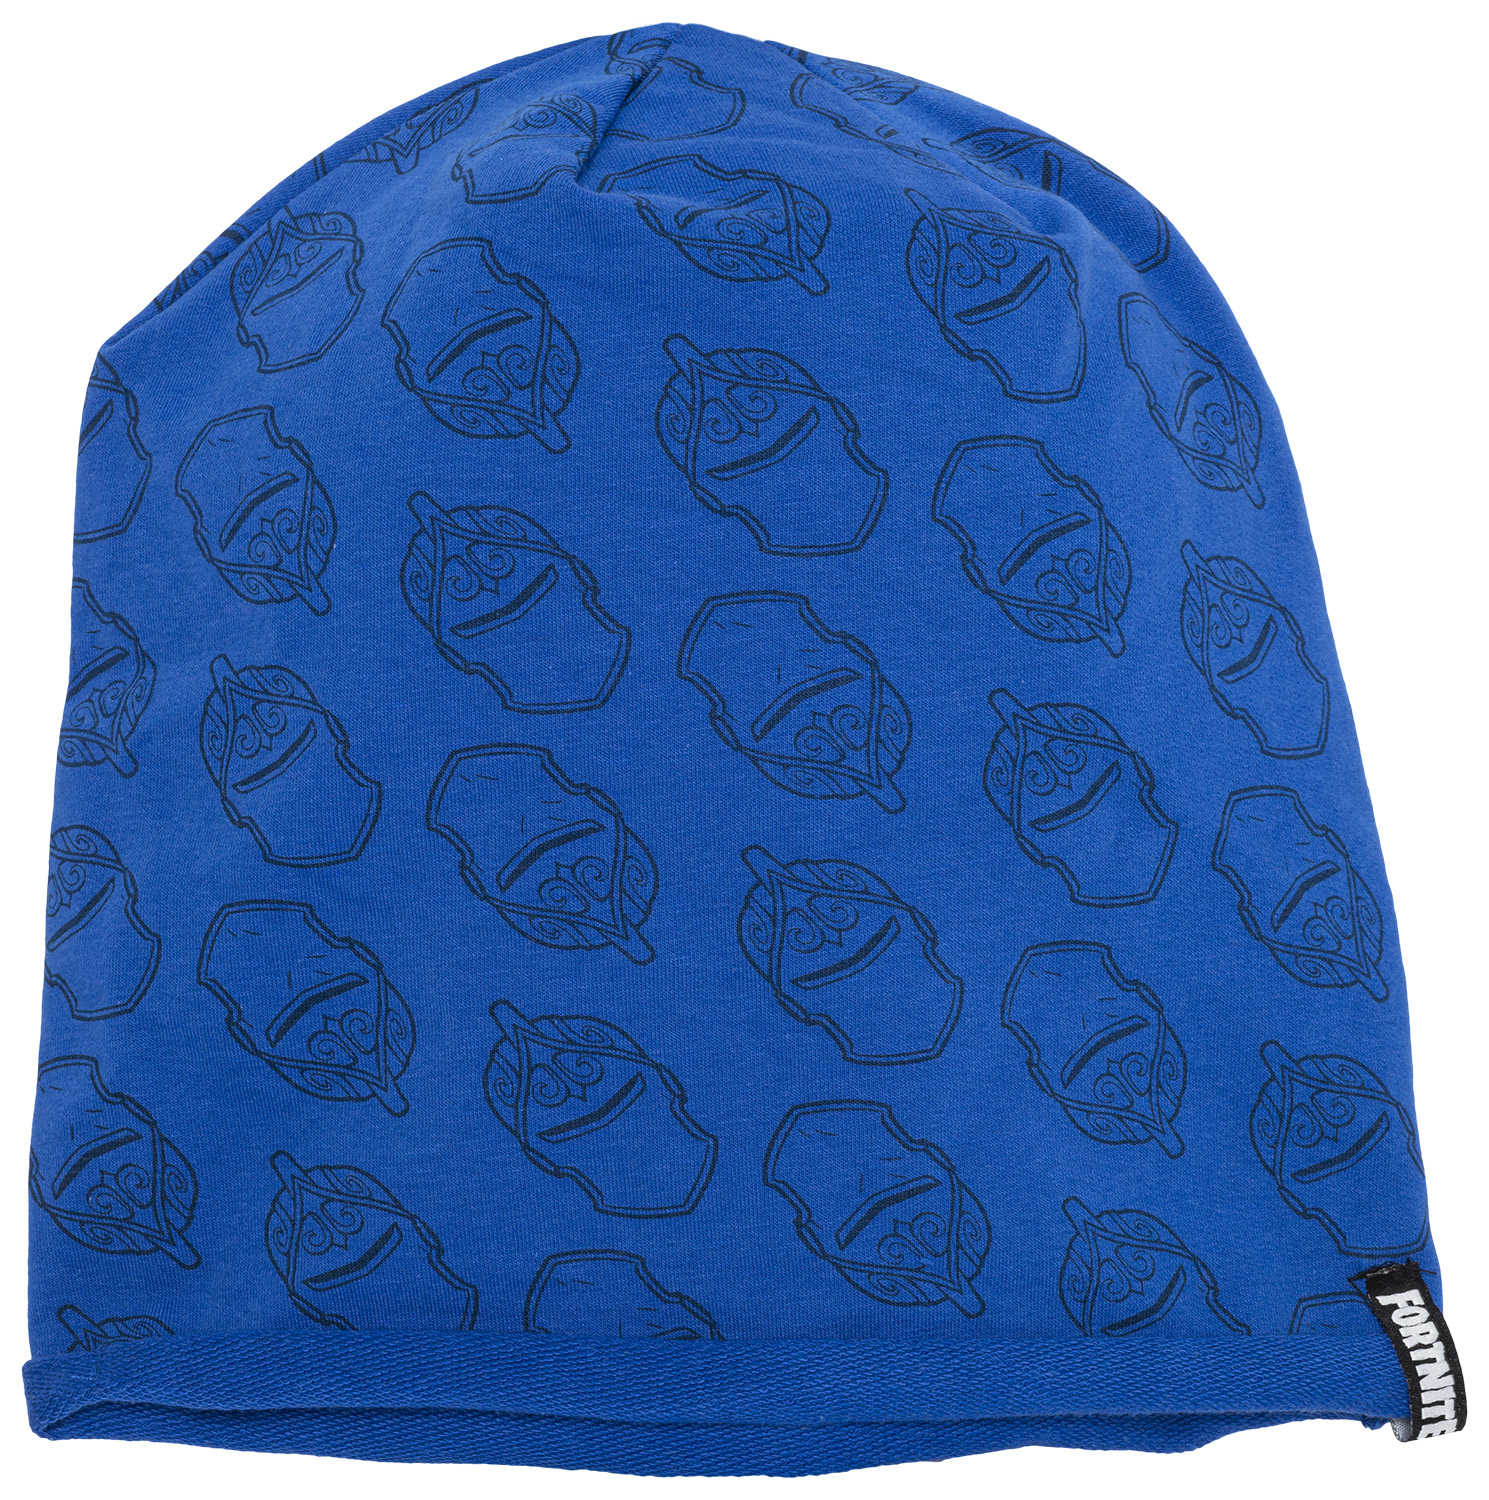 Mütze - Fortnite - Blau